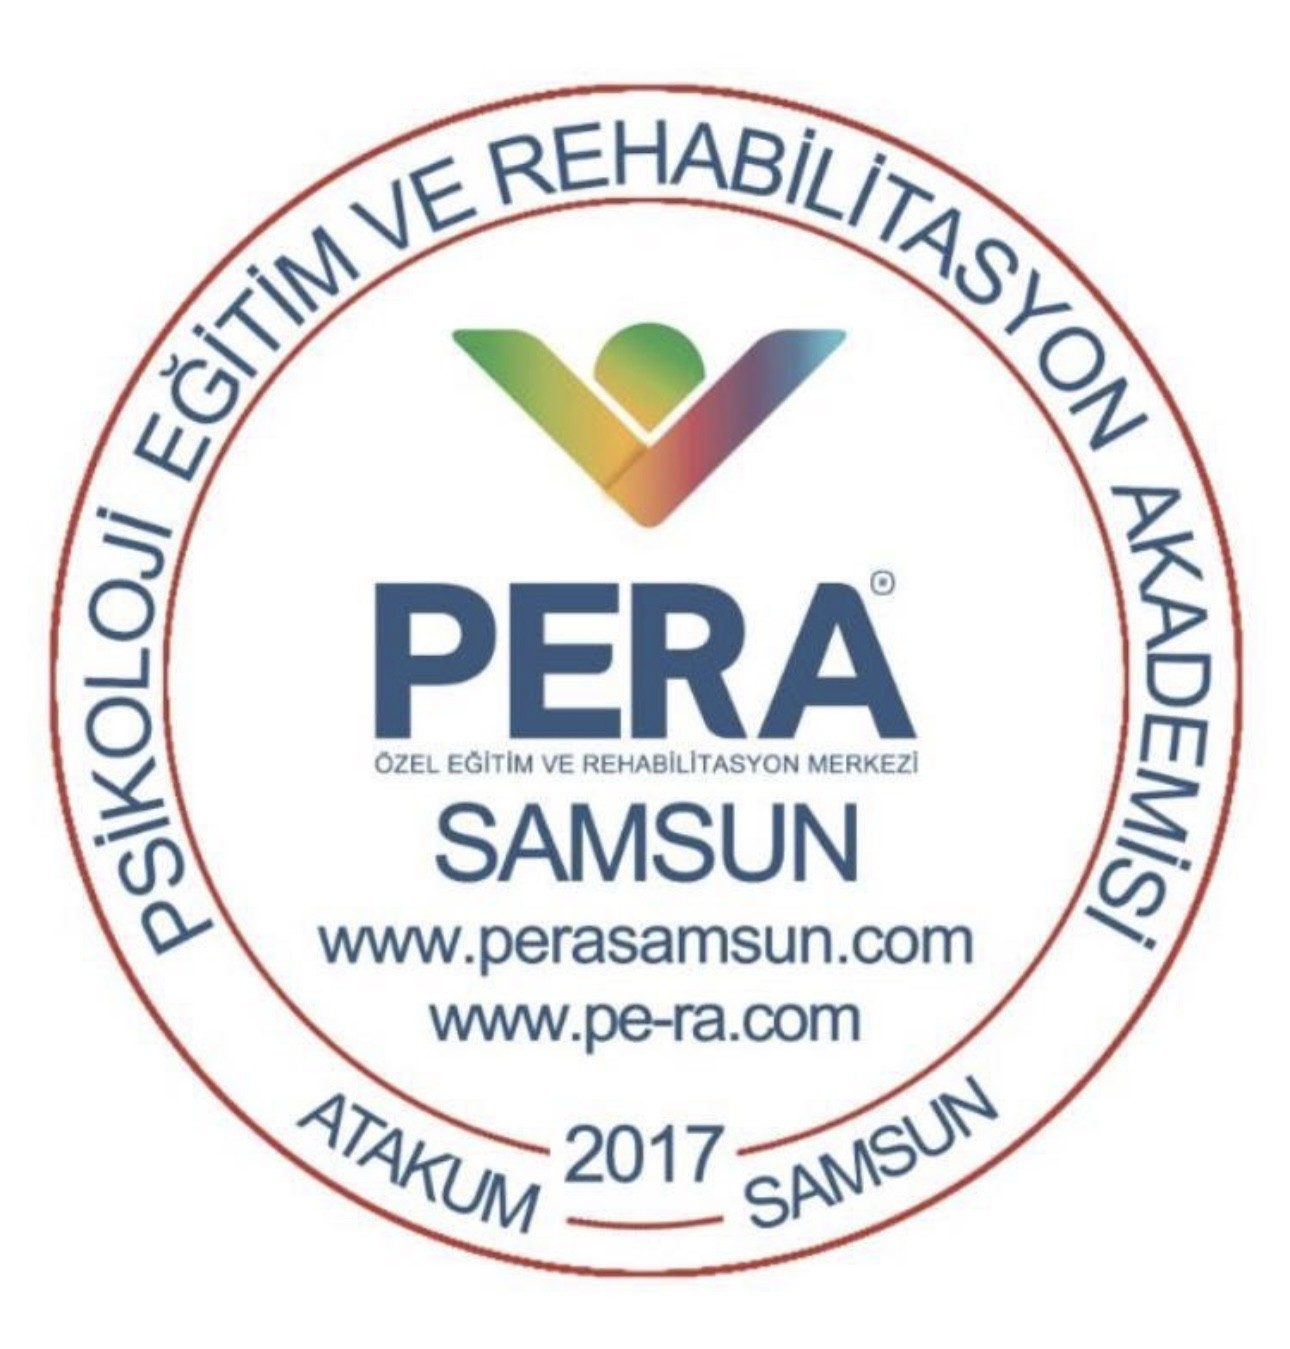 PERA Samsun Özel Eğitim ve Rehabilitasyon Merkezi / Samsun